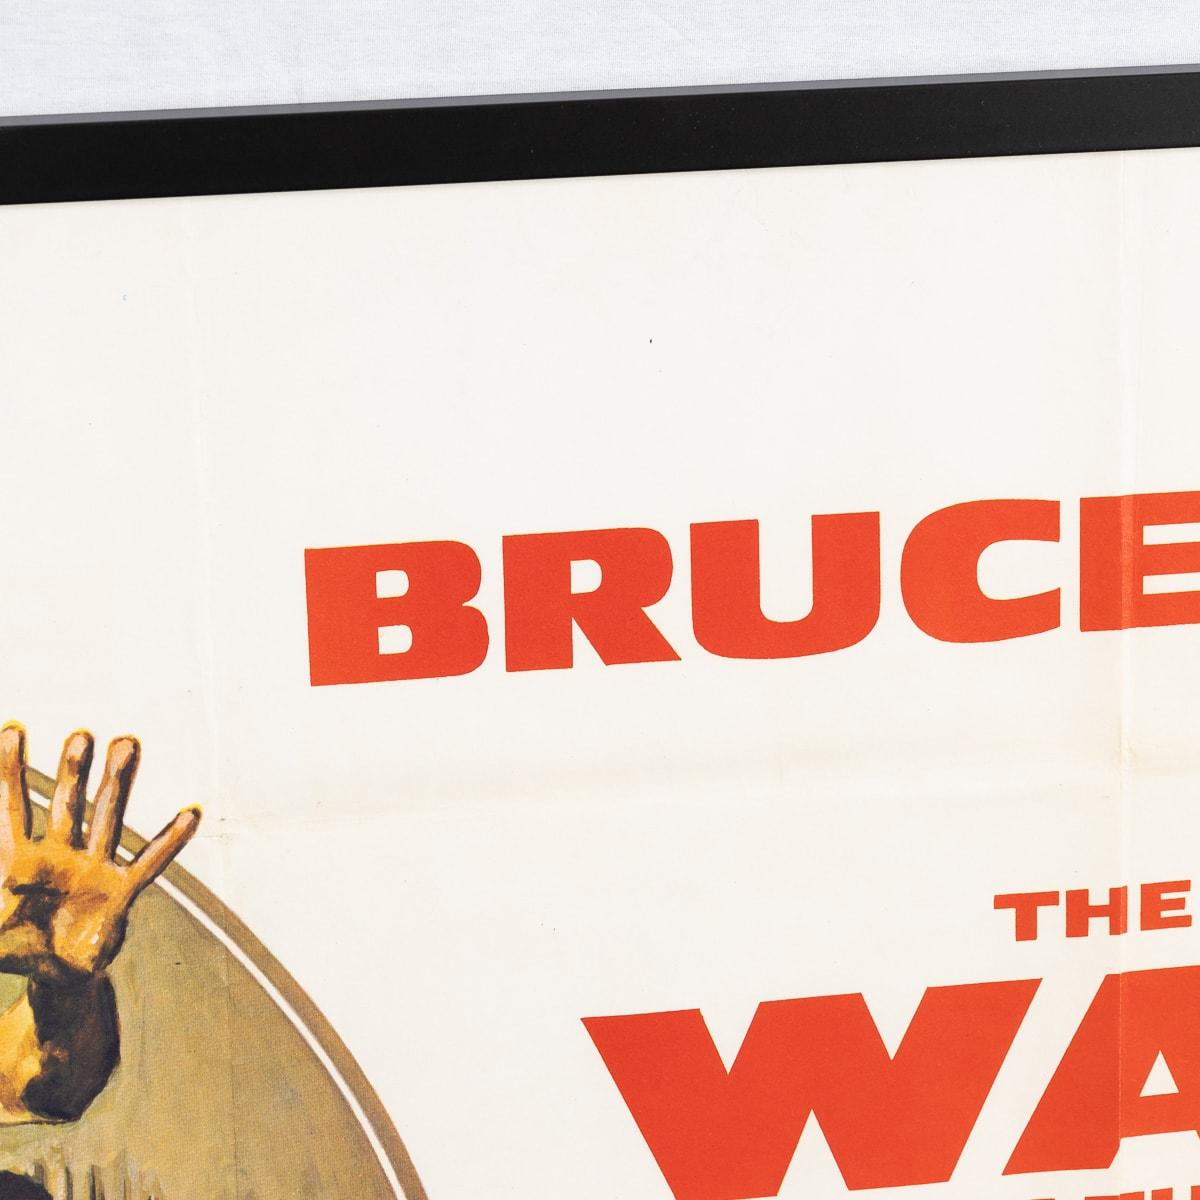 A Framed Original British Quad Bruce Lee 